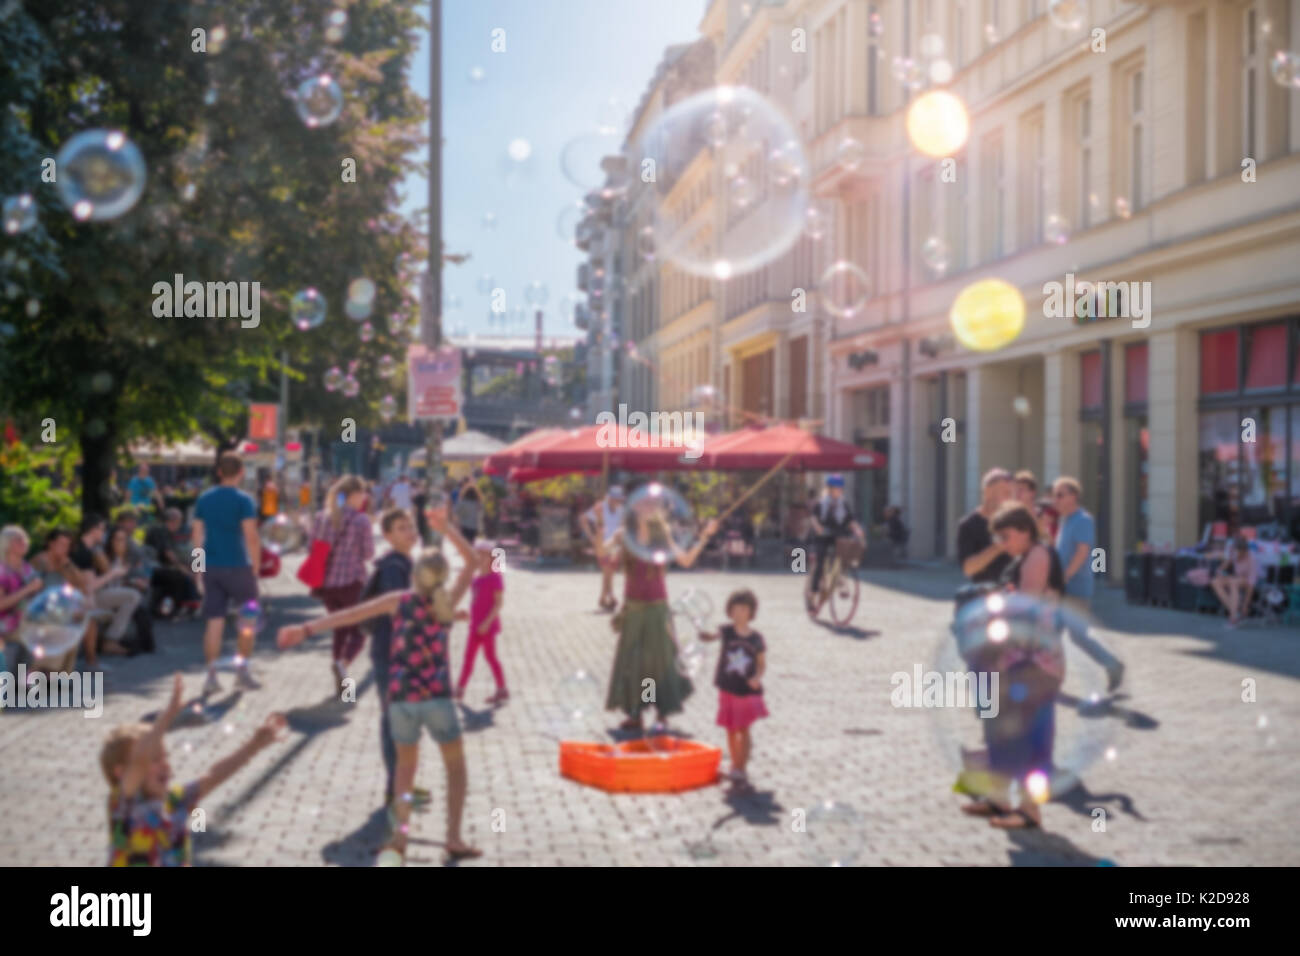 Sfocata street scene concetto - ragazza facendo bolle di sapone in una giornata di sole Foto Stock